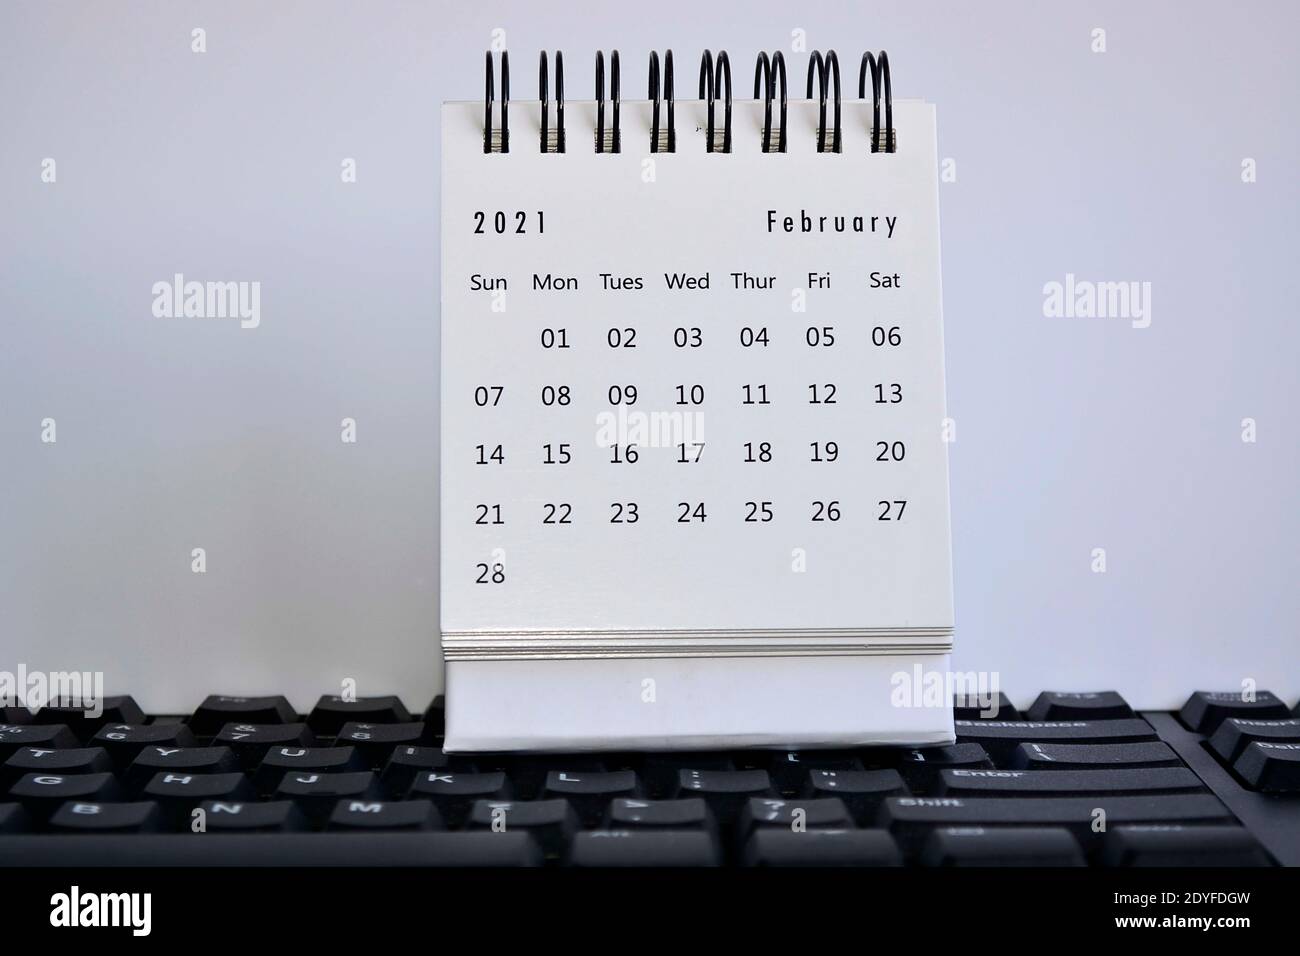 Calendrier blanc de février 2021 sur clavier avec arrière-plans blancs. Concept du nouvel an 2021 Banque D'Images